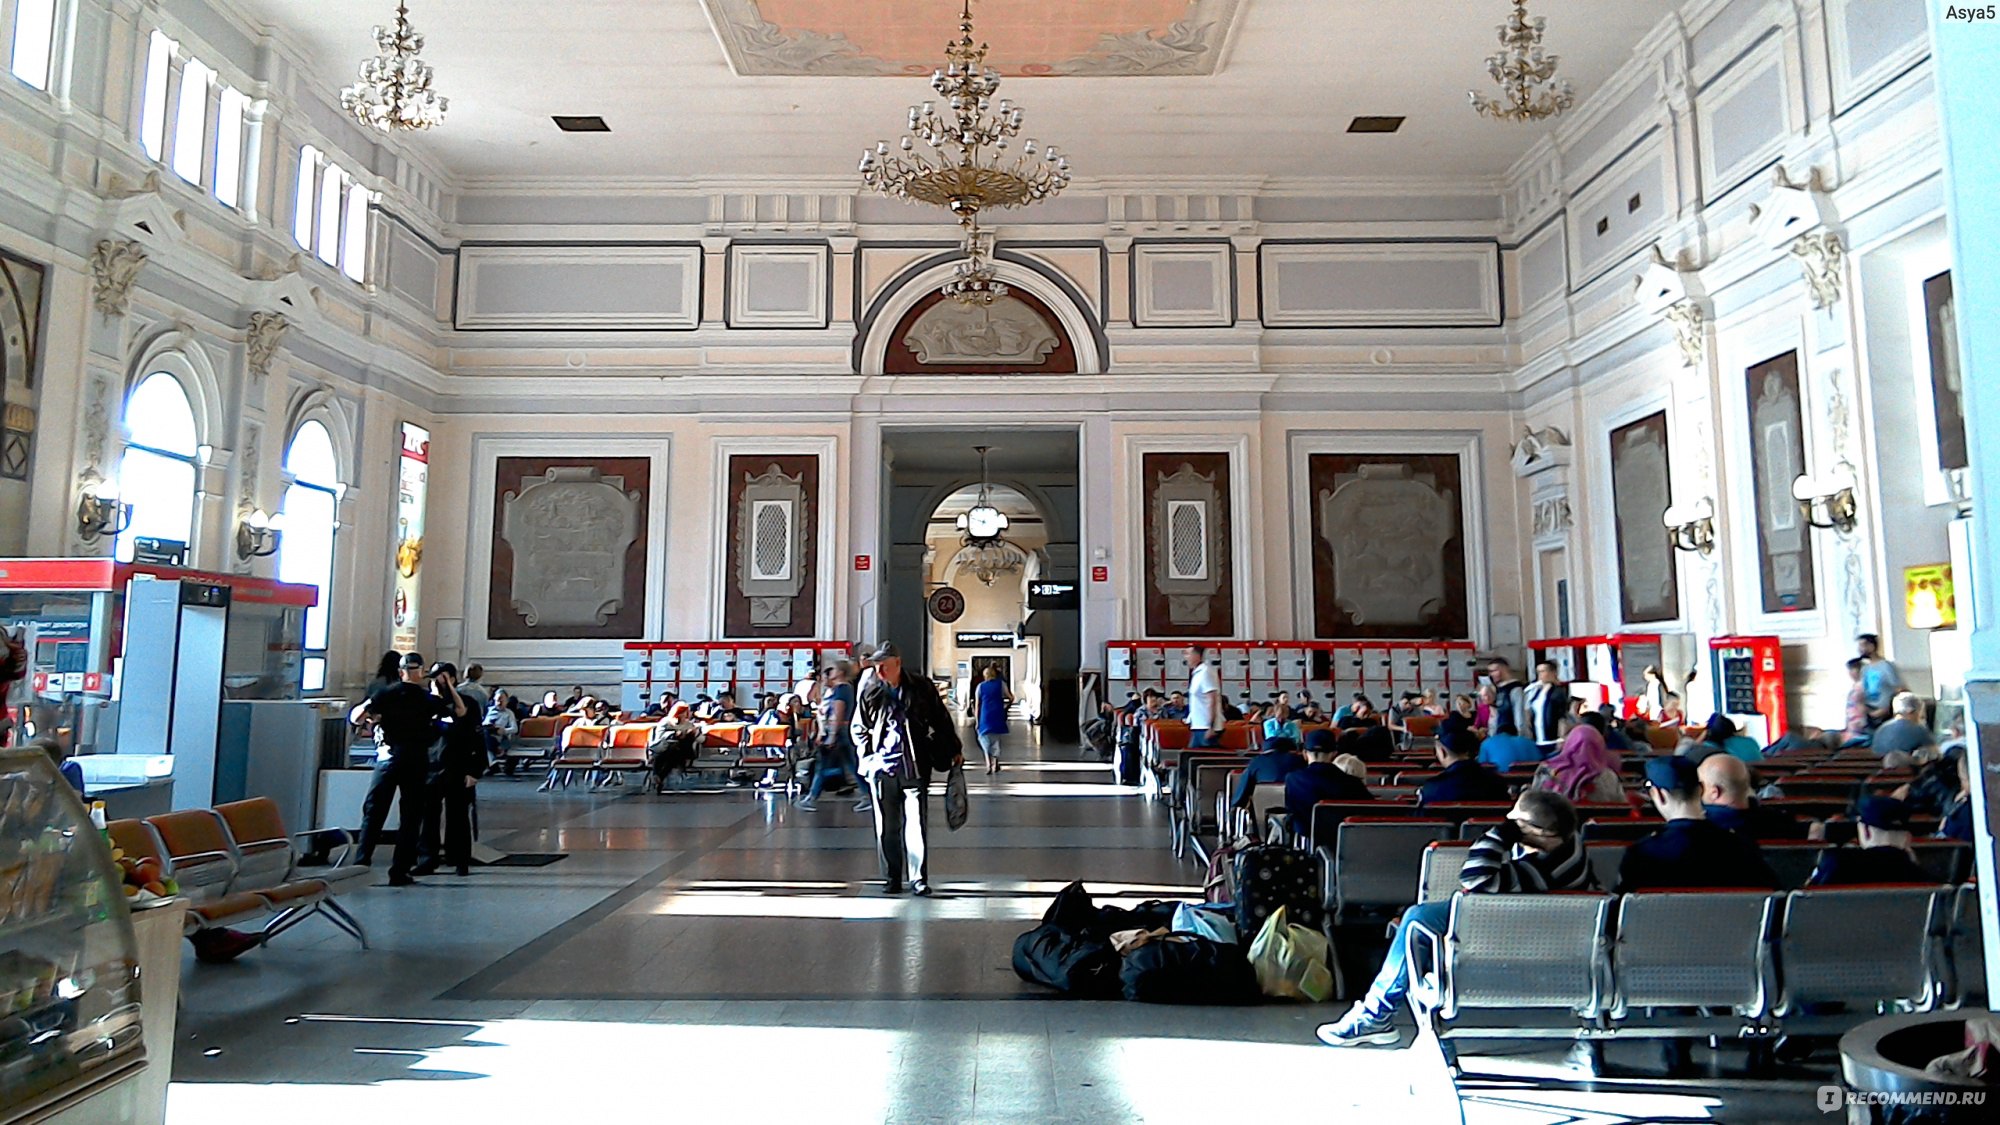 Курский вокзал Москва зал ожидания